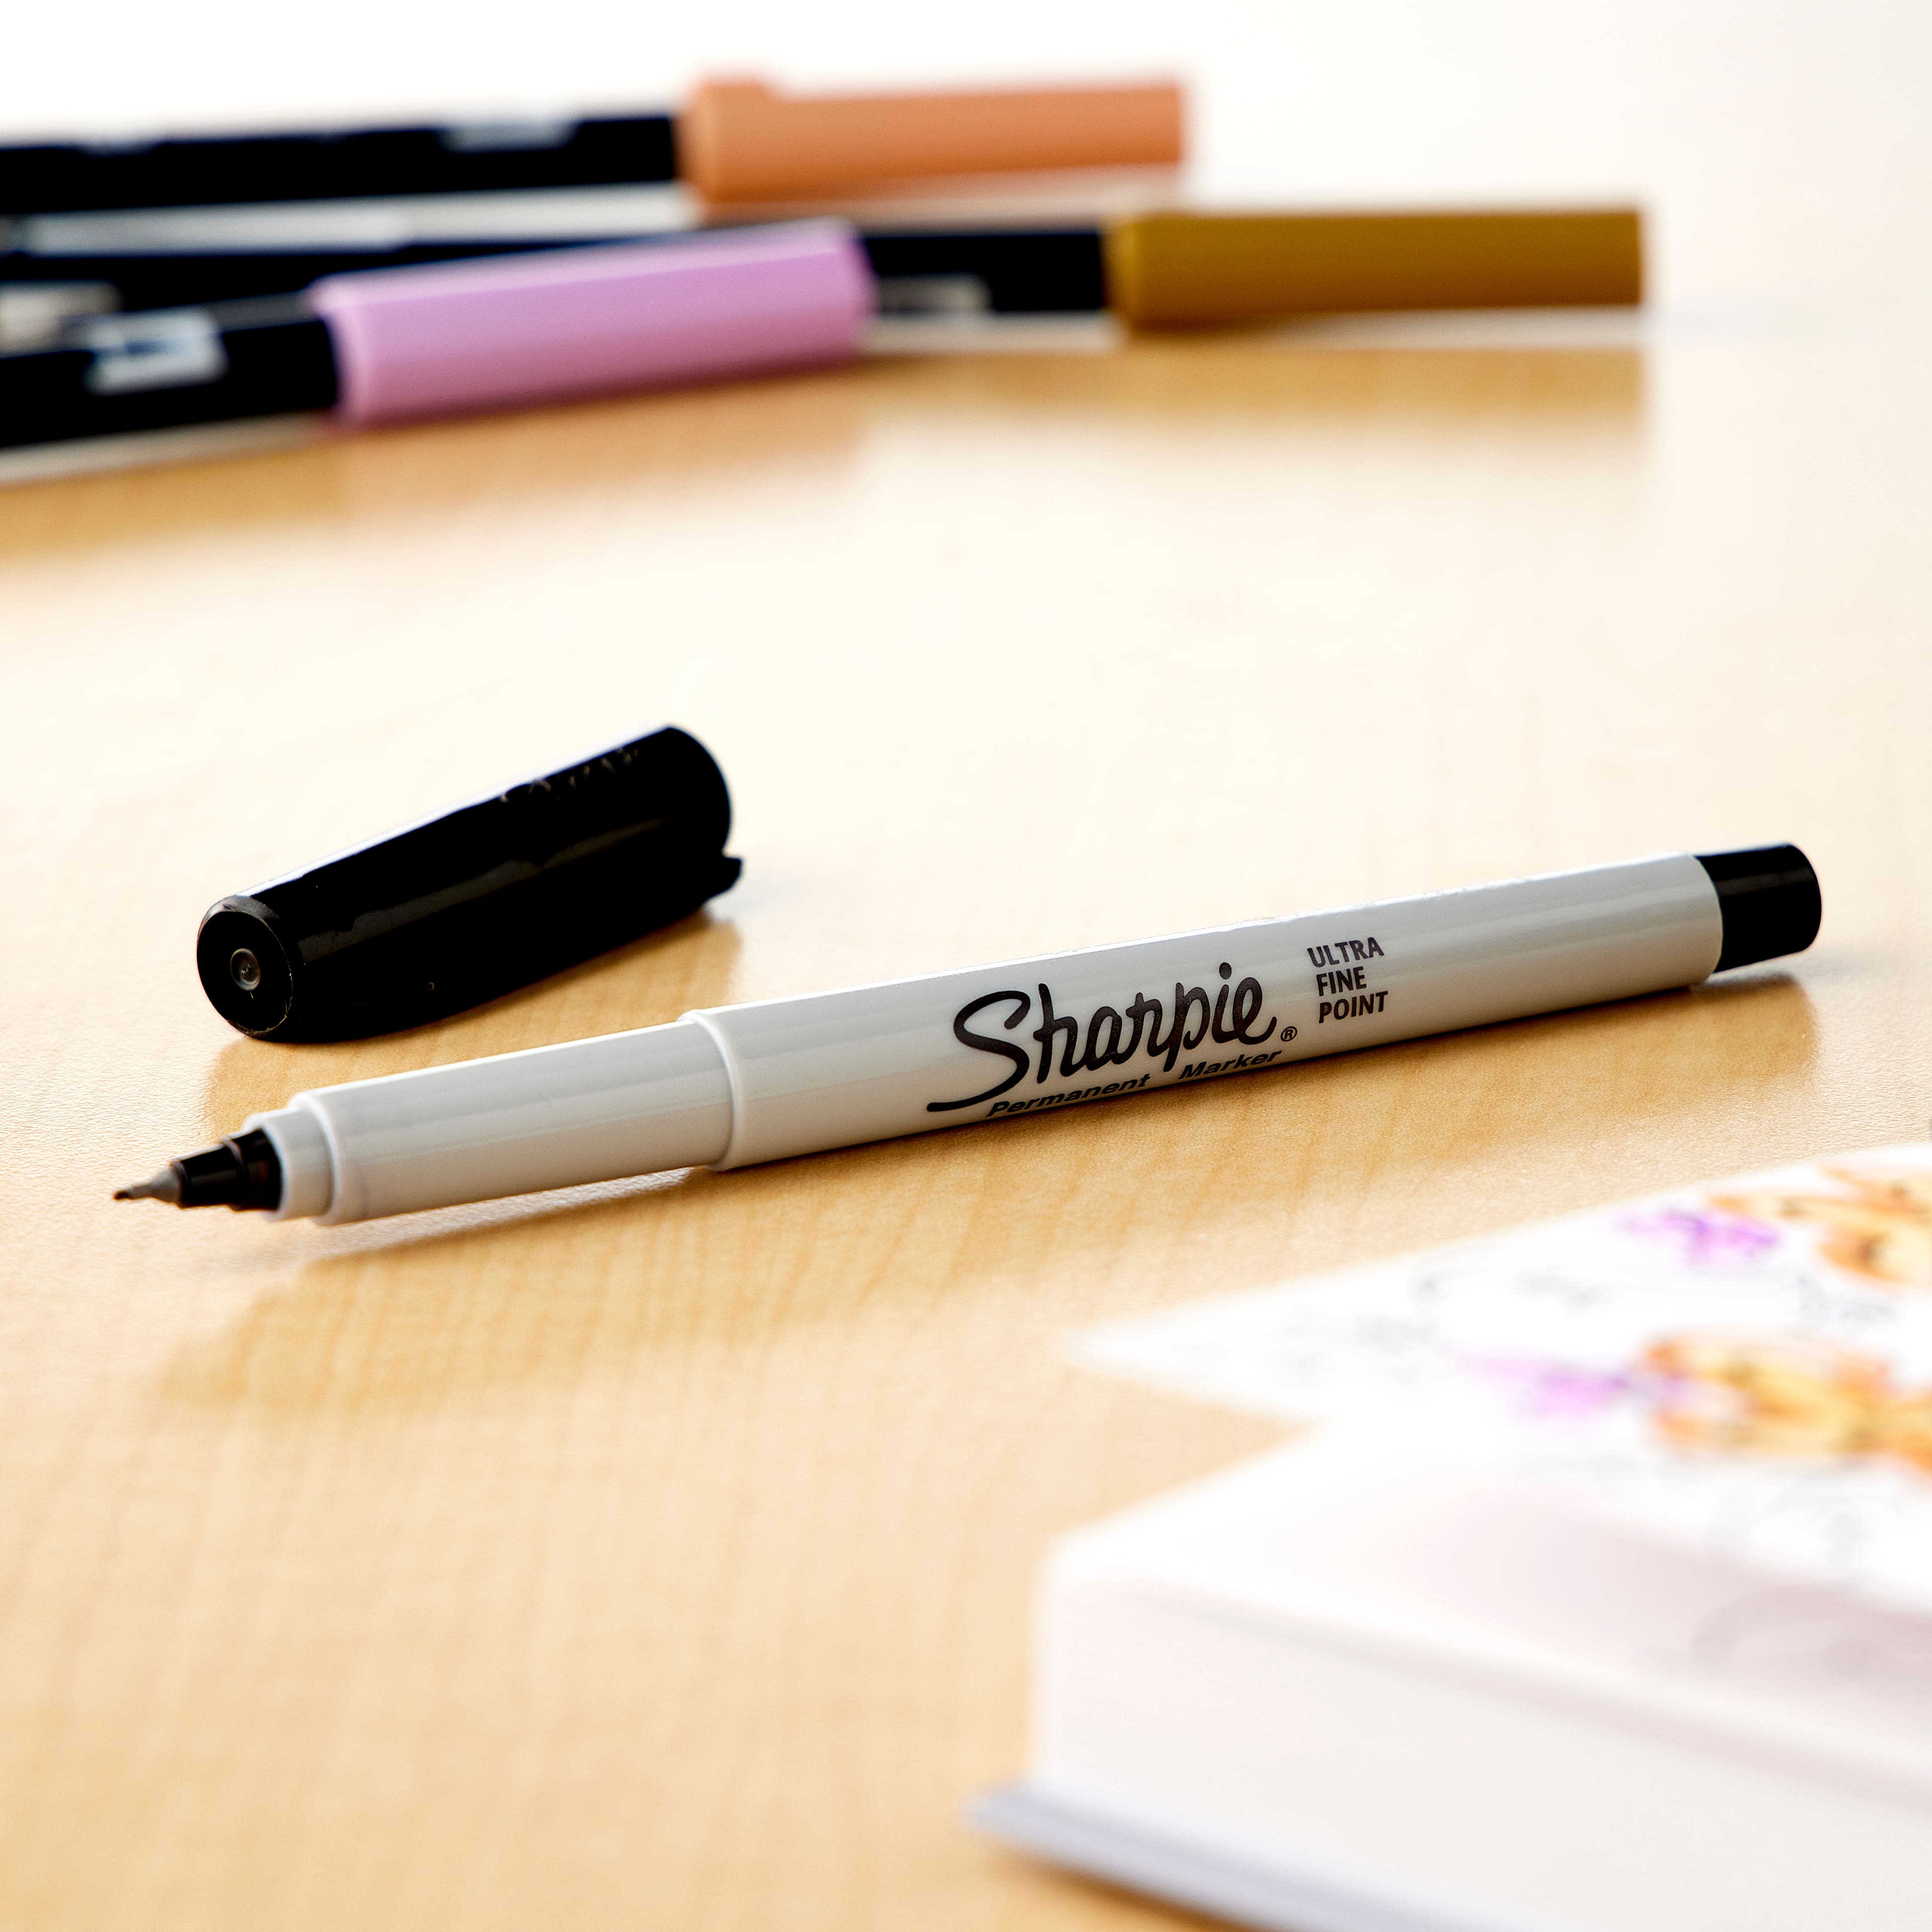 Sharpie Marker Sets, Fine Point - FLAX art & design